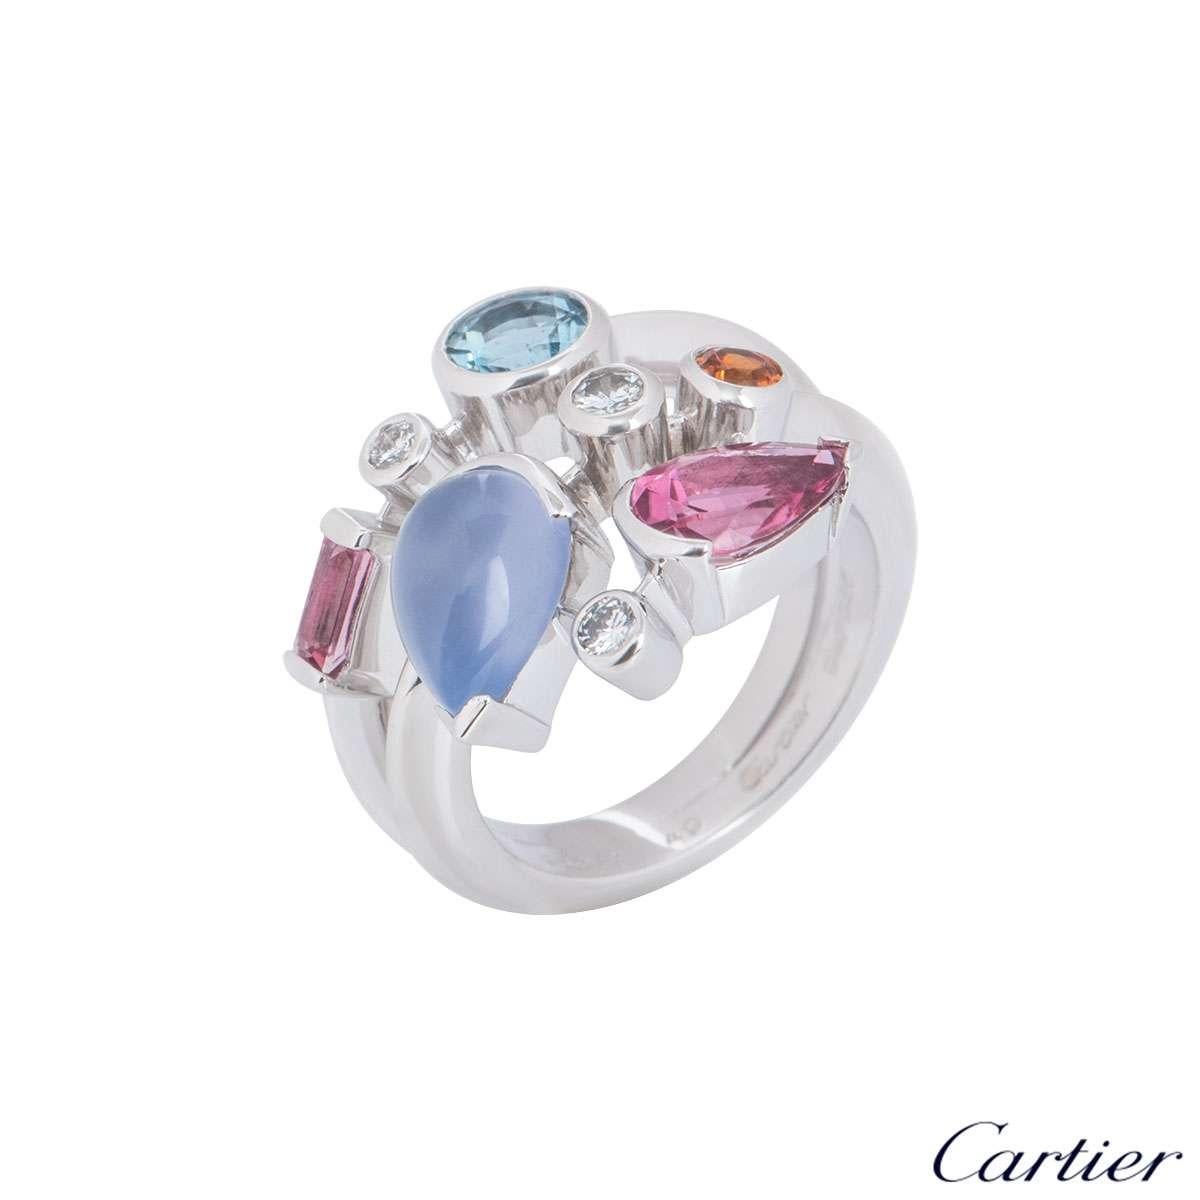 Ein Cartier-Ring aus Platin mit Diamanten und mehreren Edelsteinen aus der Kollektion Meli Melo. Der Ring besteht aus 8 Edelsteinen, die abstrakt in 3 Reihen angeordnet sind, bestehend aus Diamanten, Aquamarin, Chalzedon, Granat und rosa Turmalin.